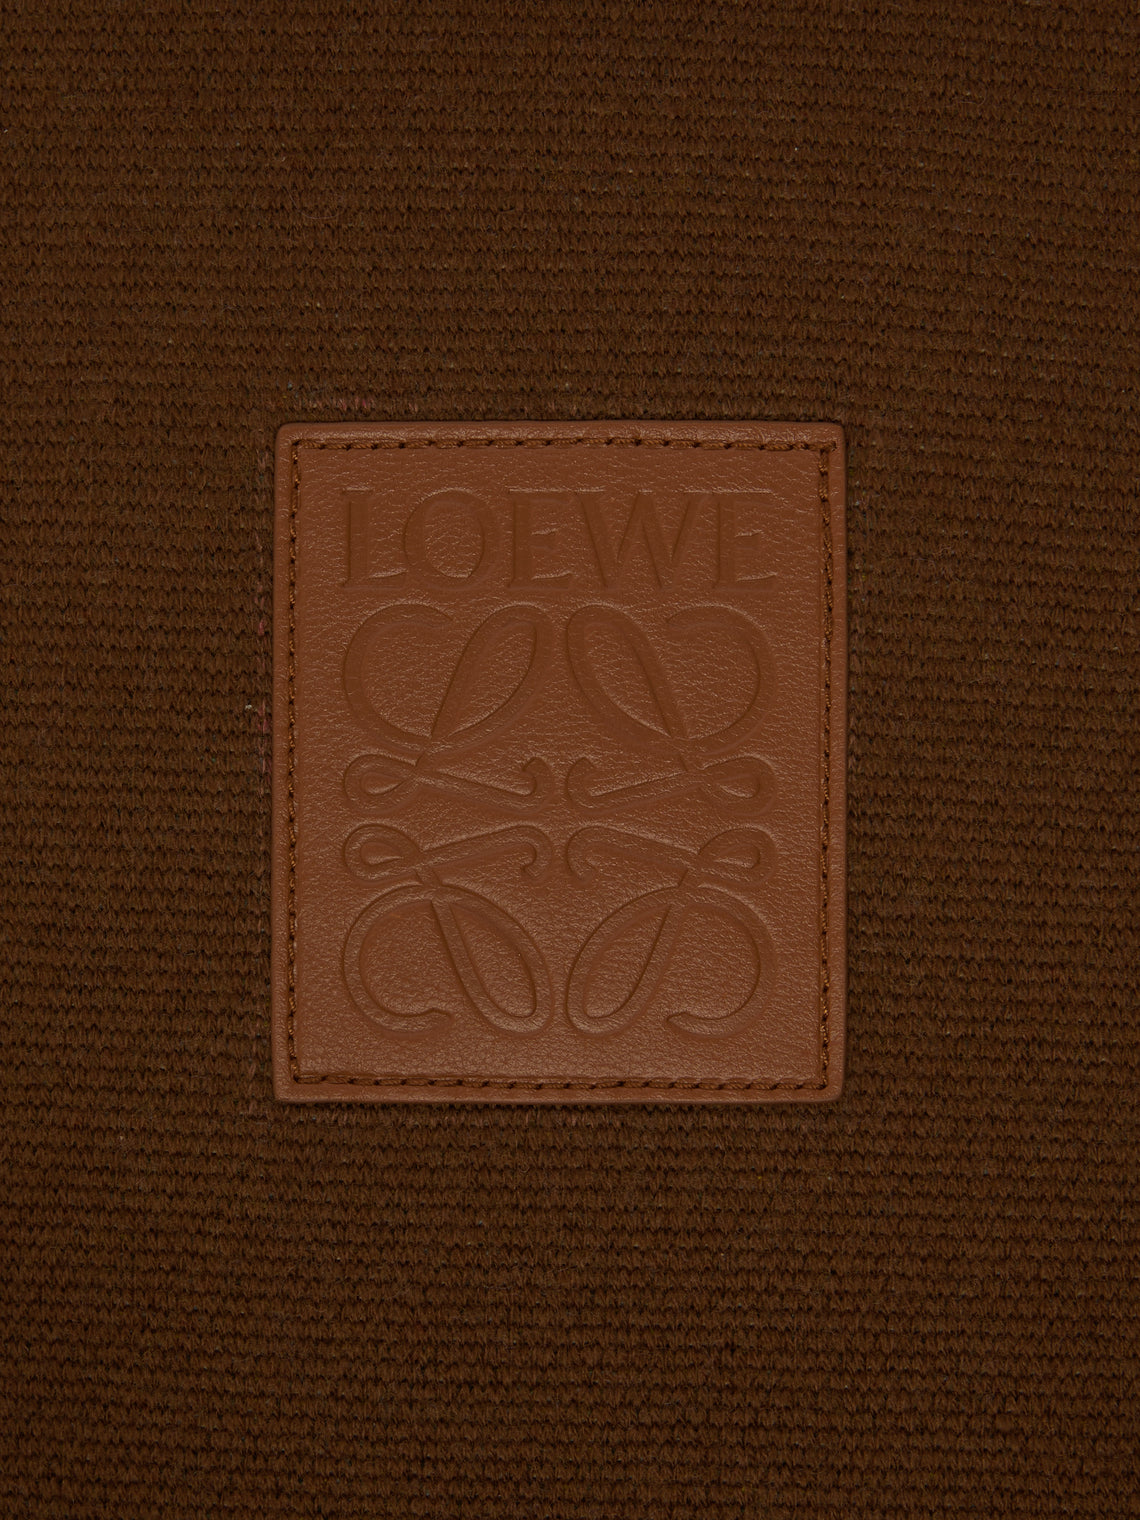 Loewe Home - Guinea Fowl Wool Cushion -  - ABASK